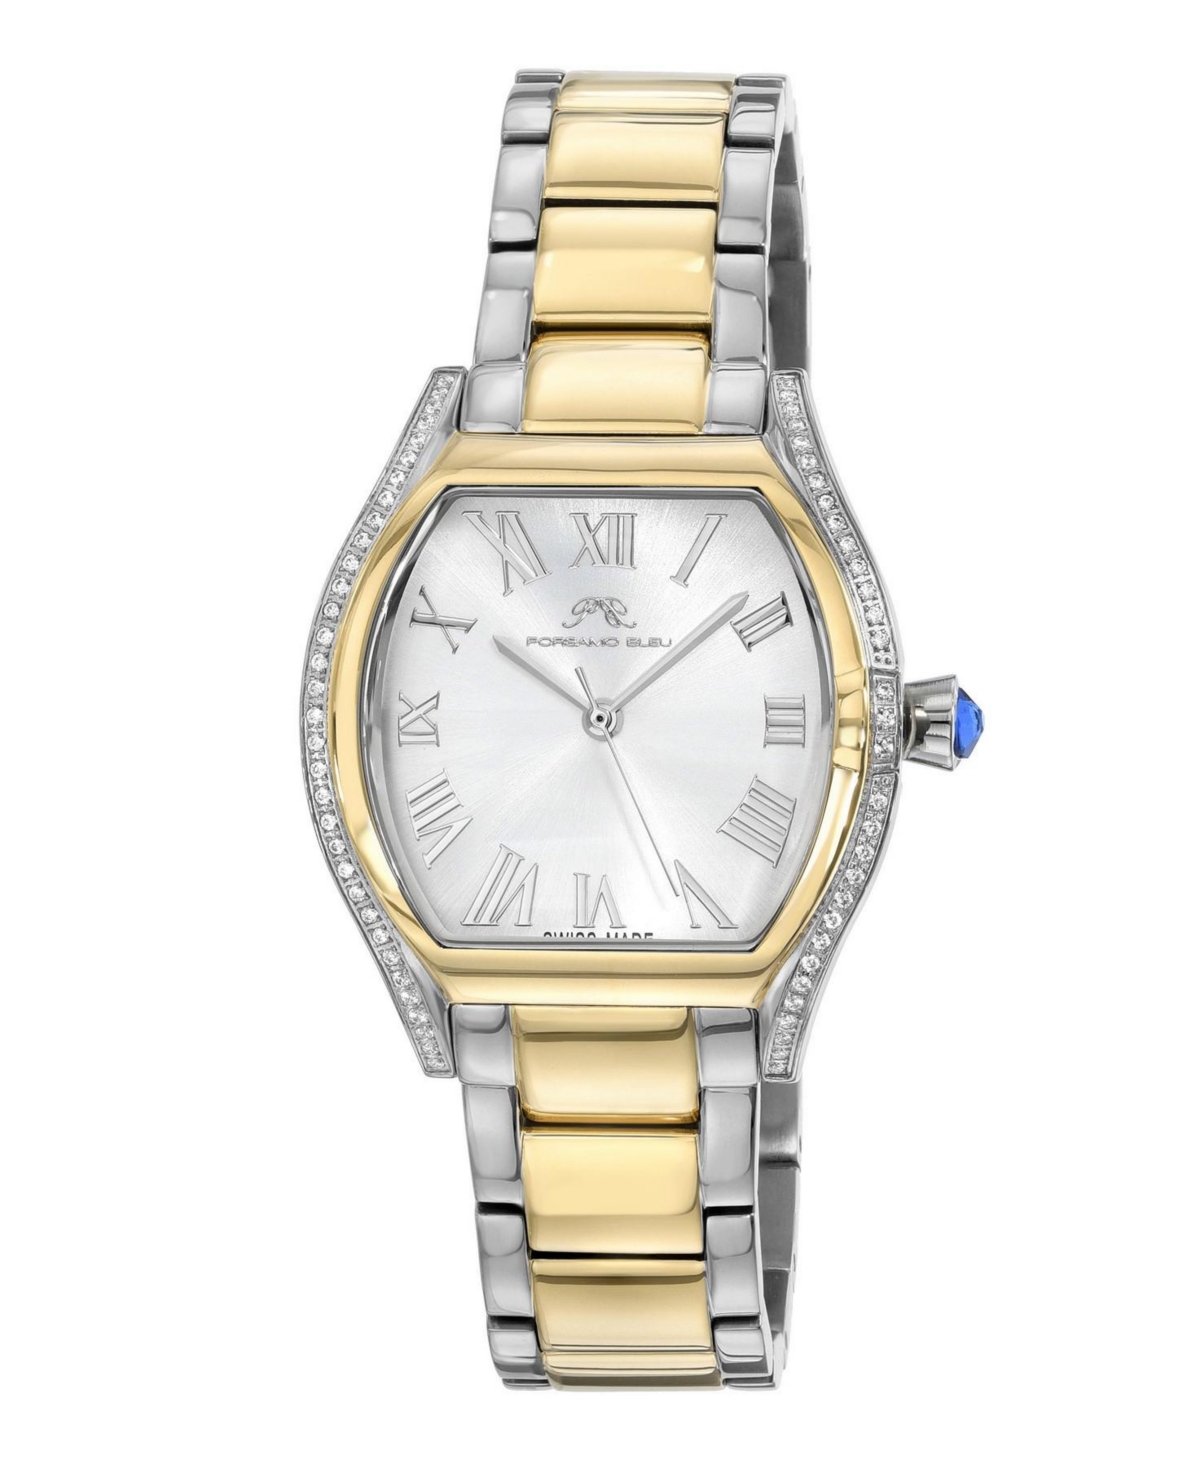 Women's Celine Stainless Steel Bracelet Watch - Silver